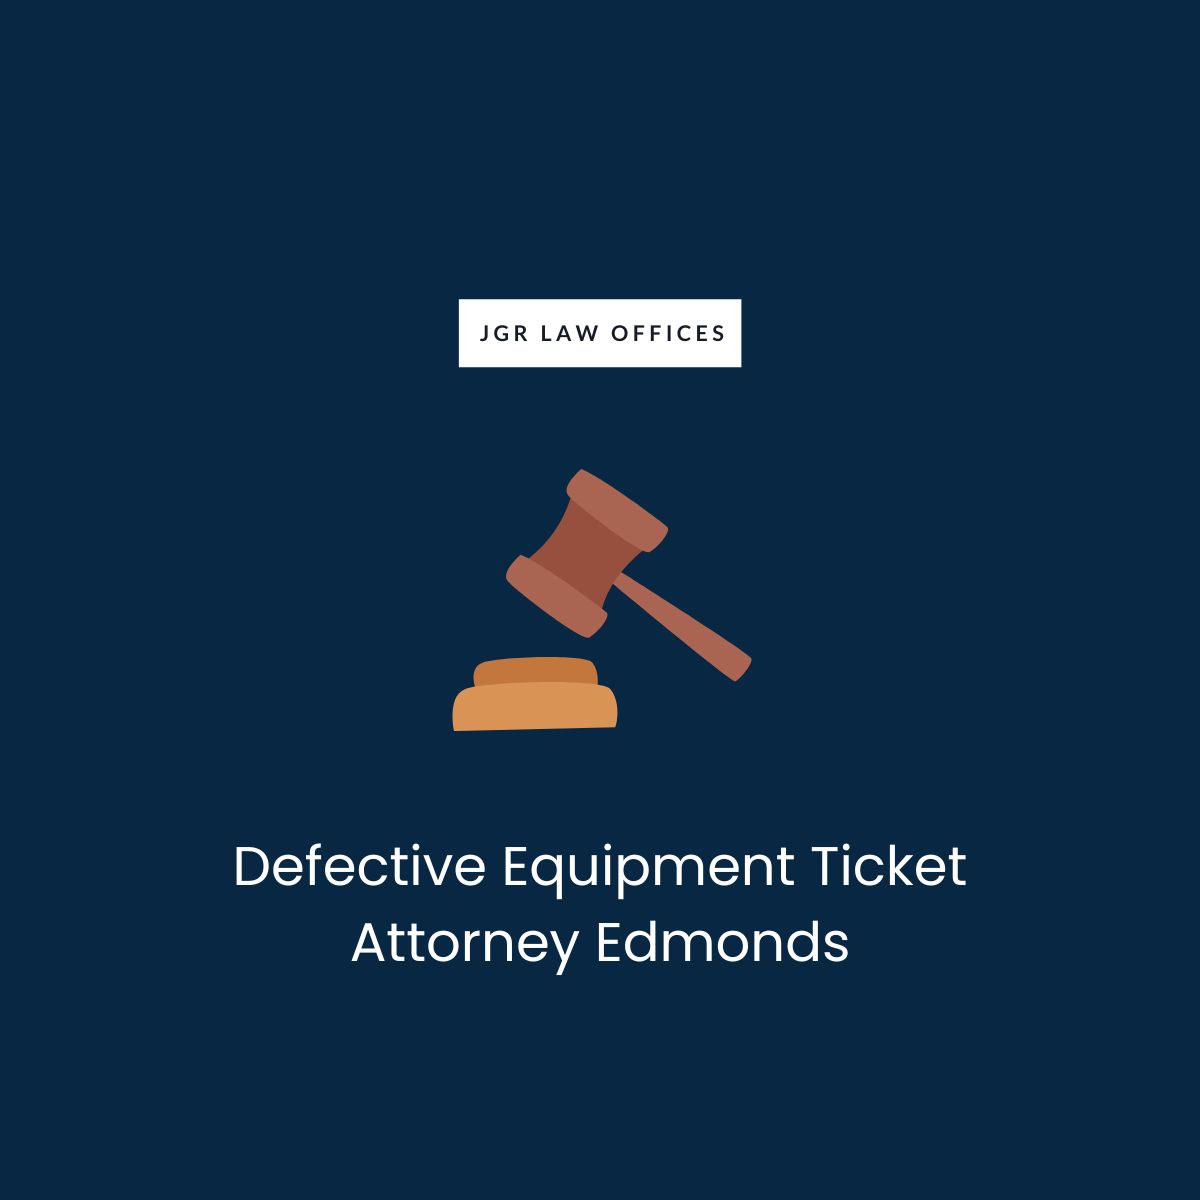 Defective Equipment Ticket Attorney Edmonds